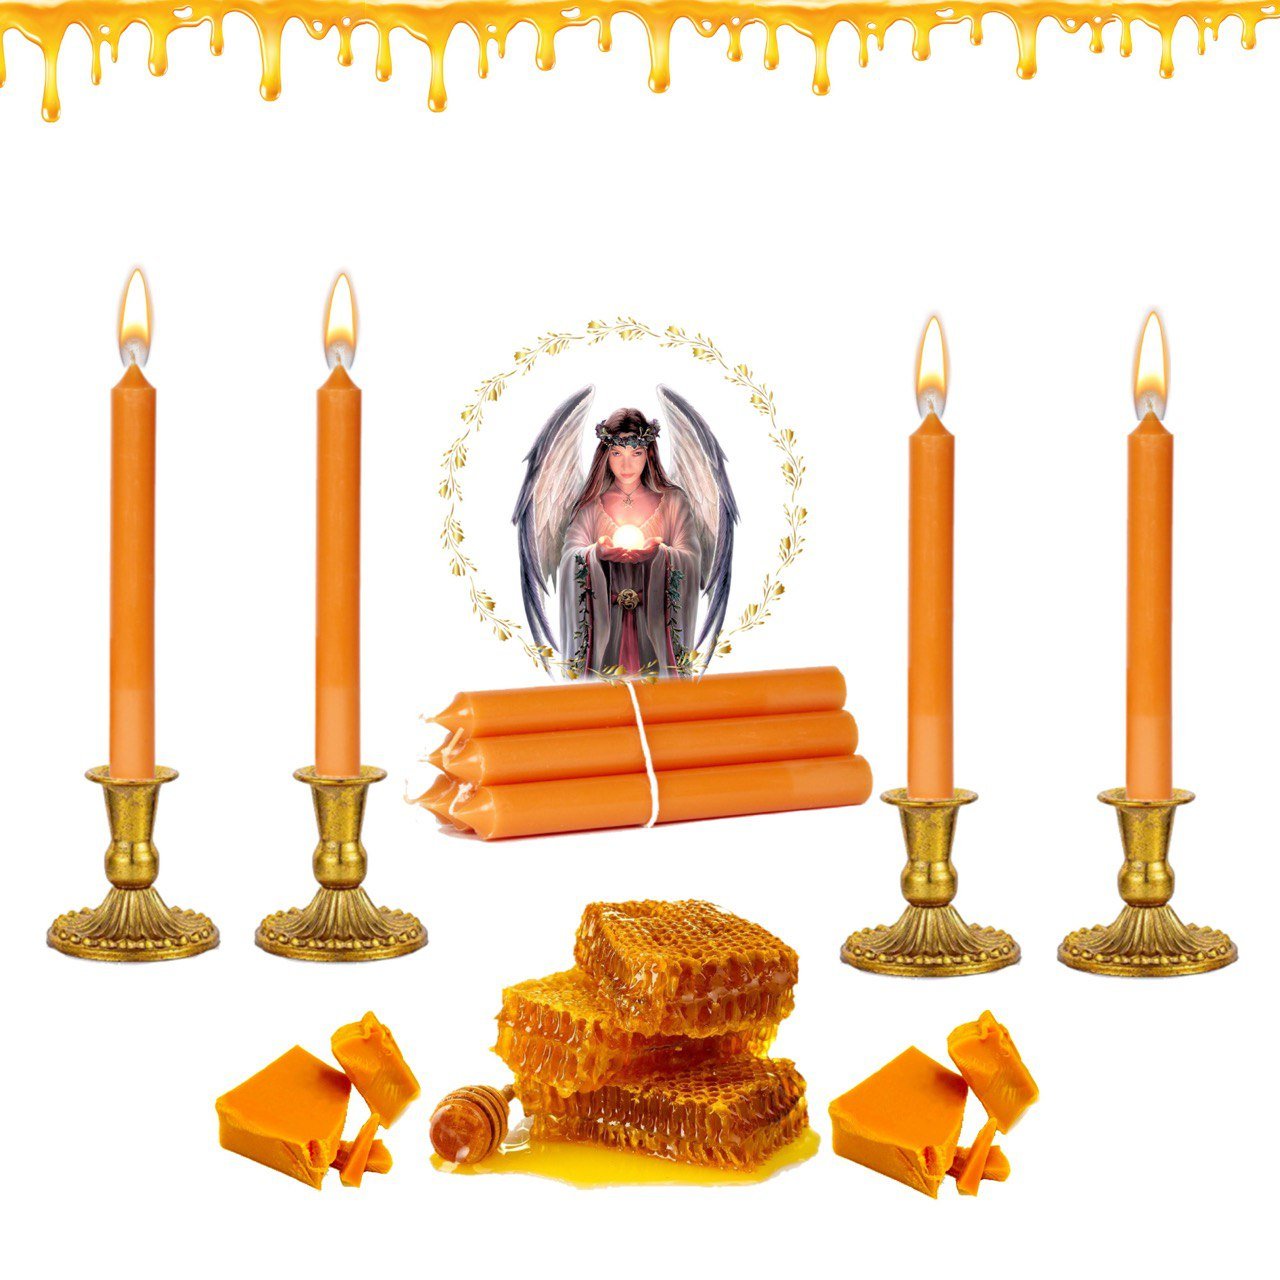 Para qué sirven las velas de miel: un símbolo asociado a la pureza